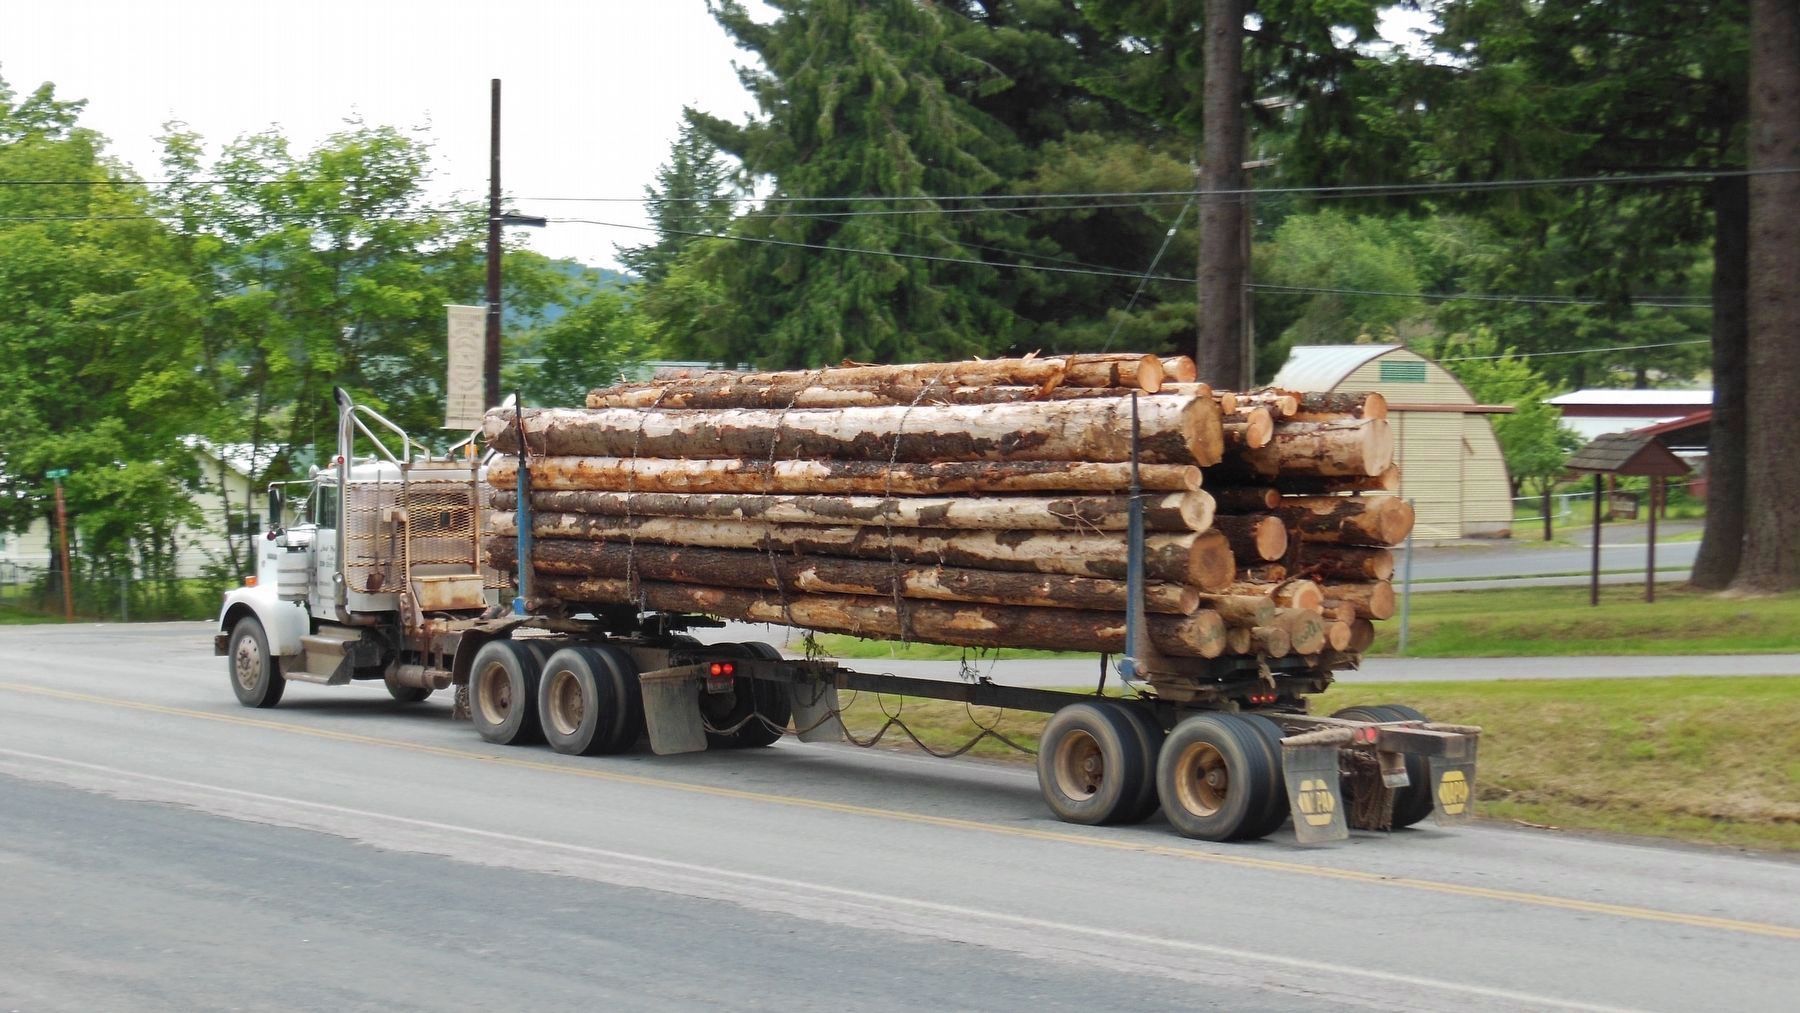 Logging trucks still use John Mullan's Road today image. Click for full size.